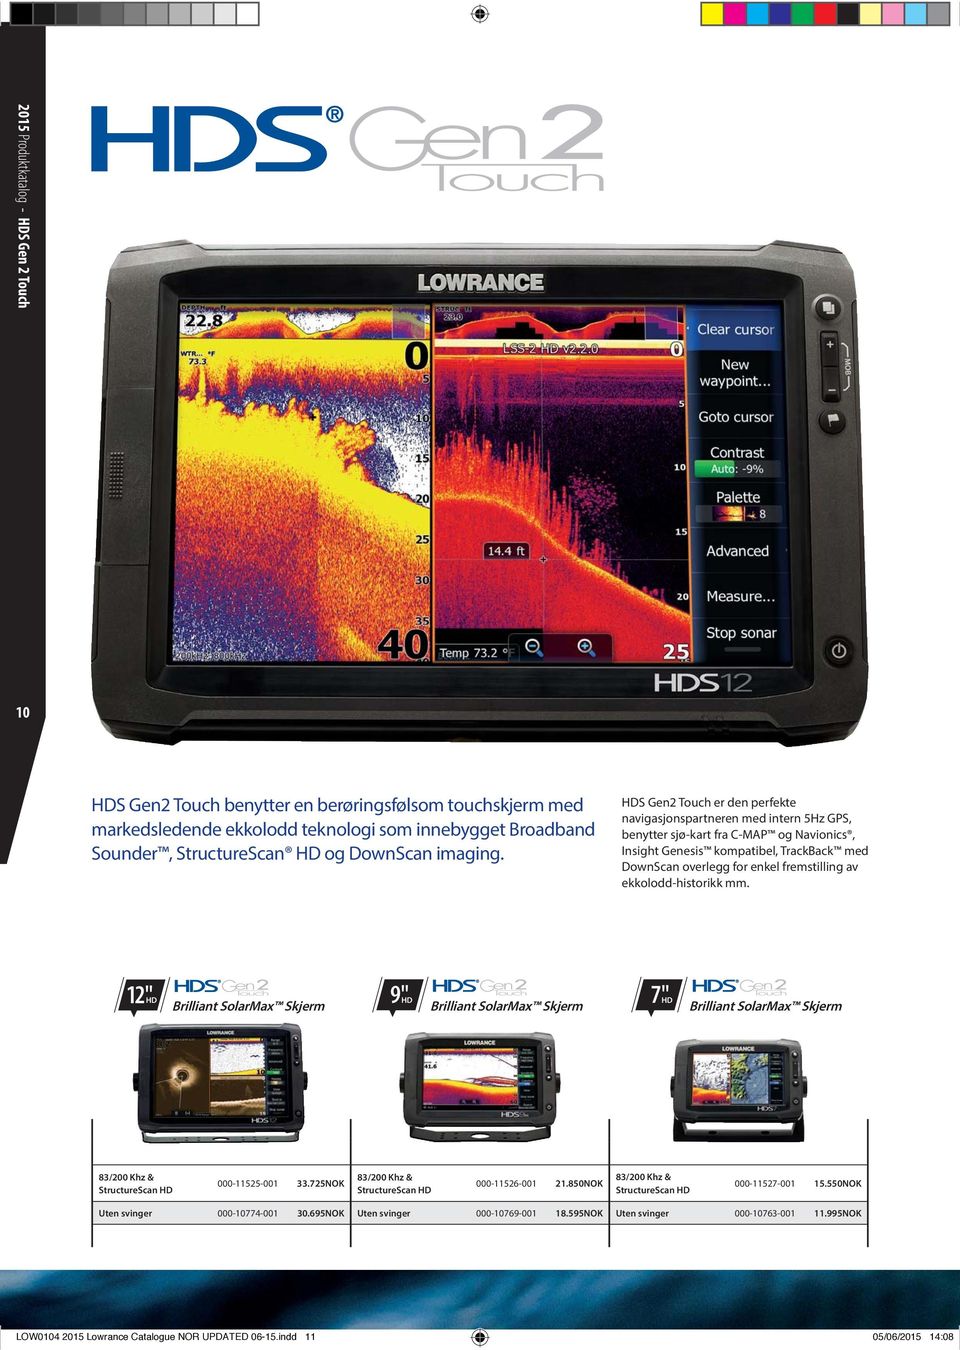 HDS Gen2 Touch er den perfekte navigasjonspartneren med intern 5Hz GPS, benytter sjø-kart fra C-MAP og Navionics, Insight Genesis kompatibel, TrackBack med DownScan overlegg for enkel fremstilling av